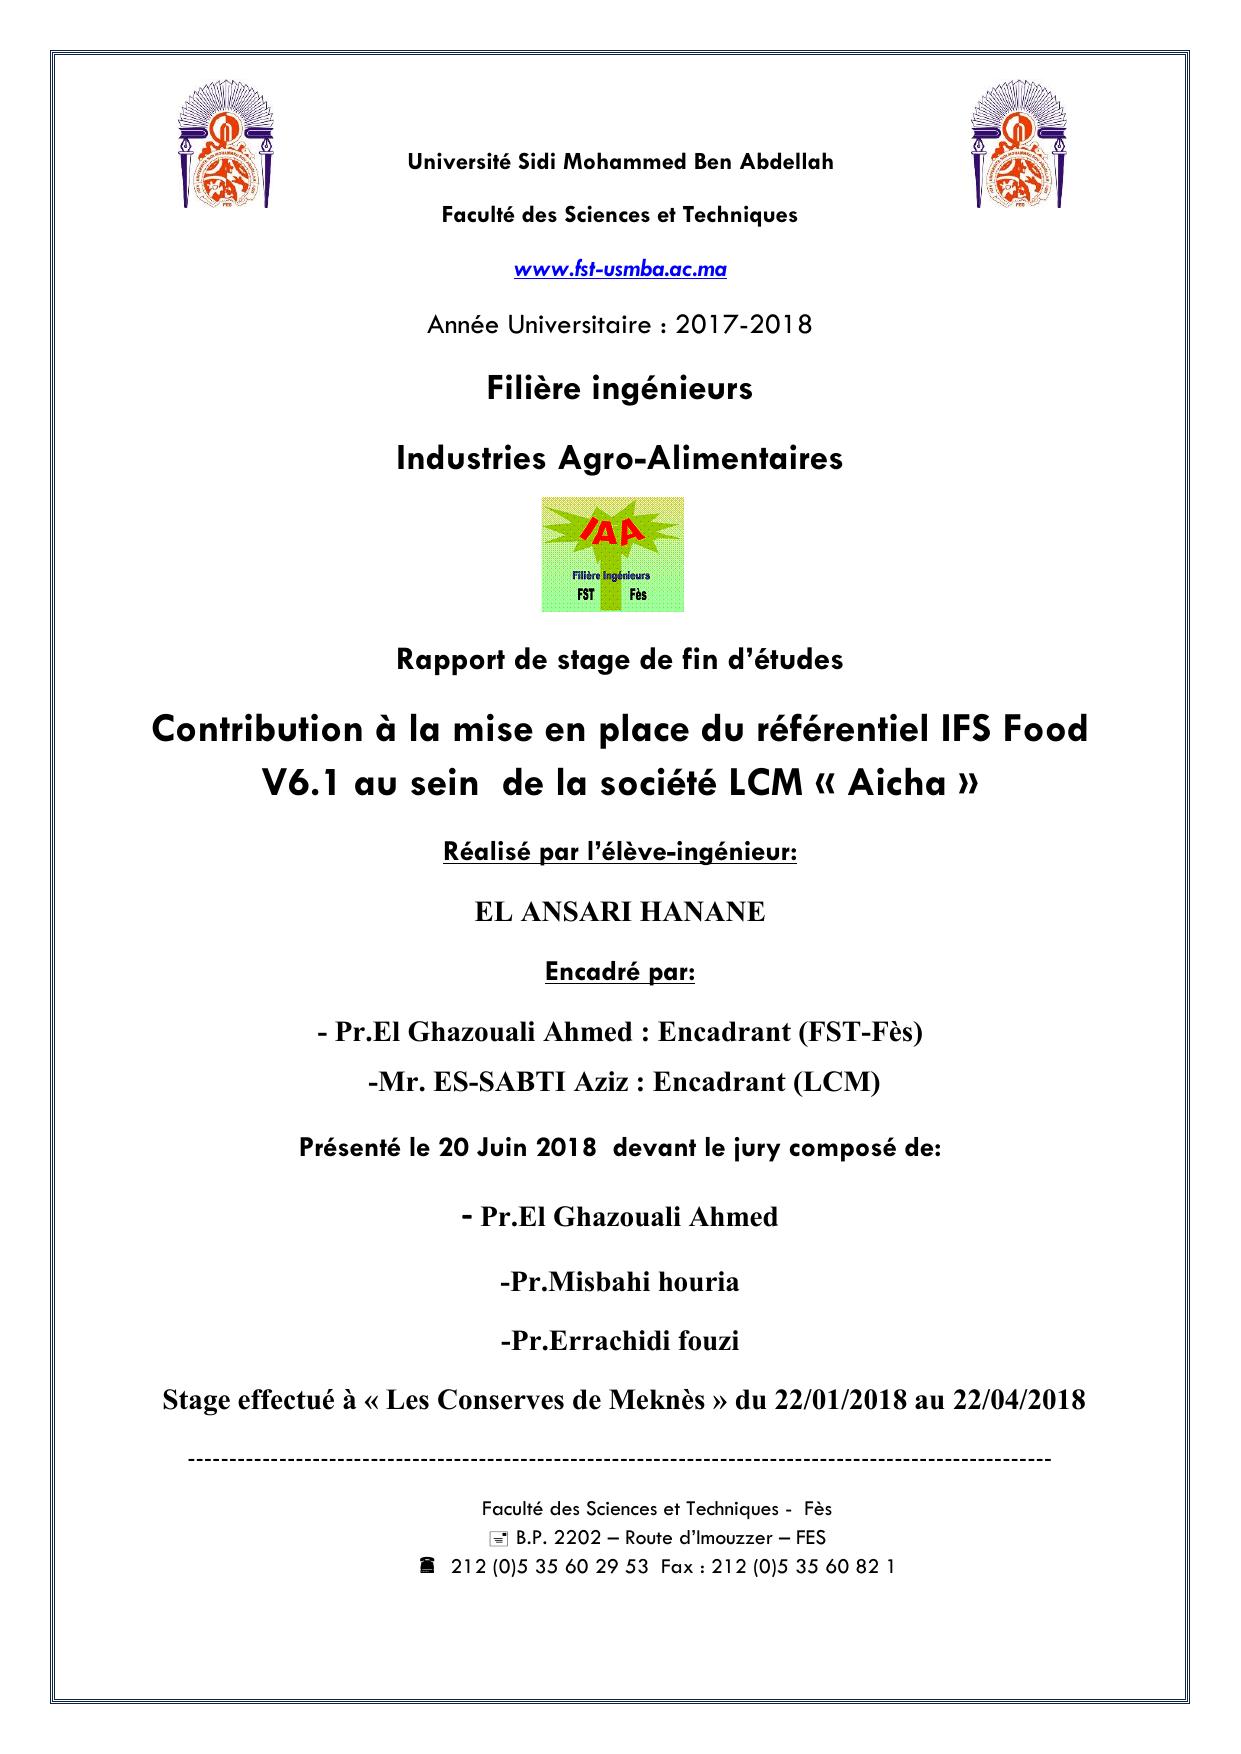 Contribution à la mise en place du référentiel IFS Food V6.1 au sein de la société LCM « Aicha »